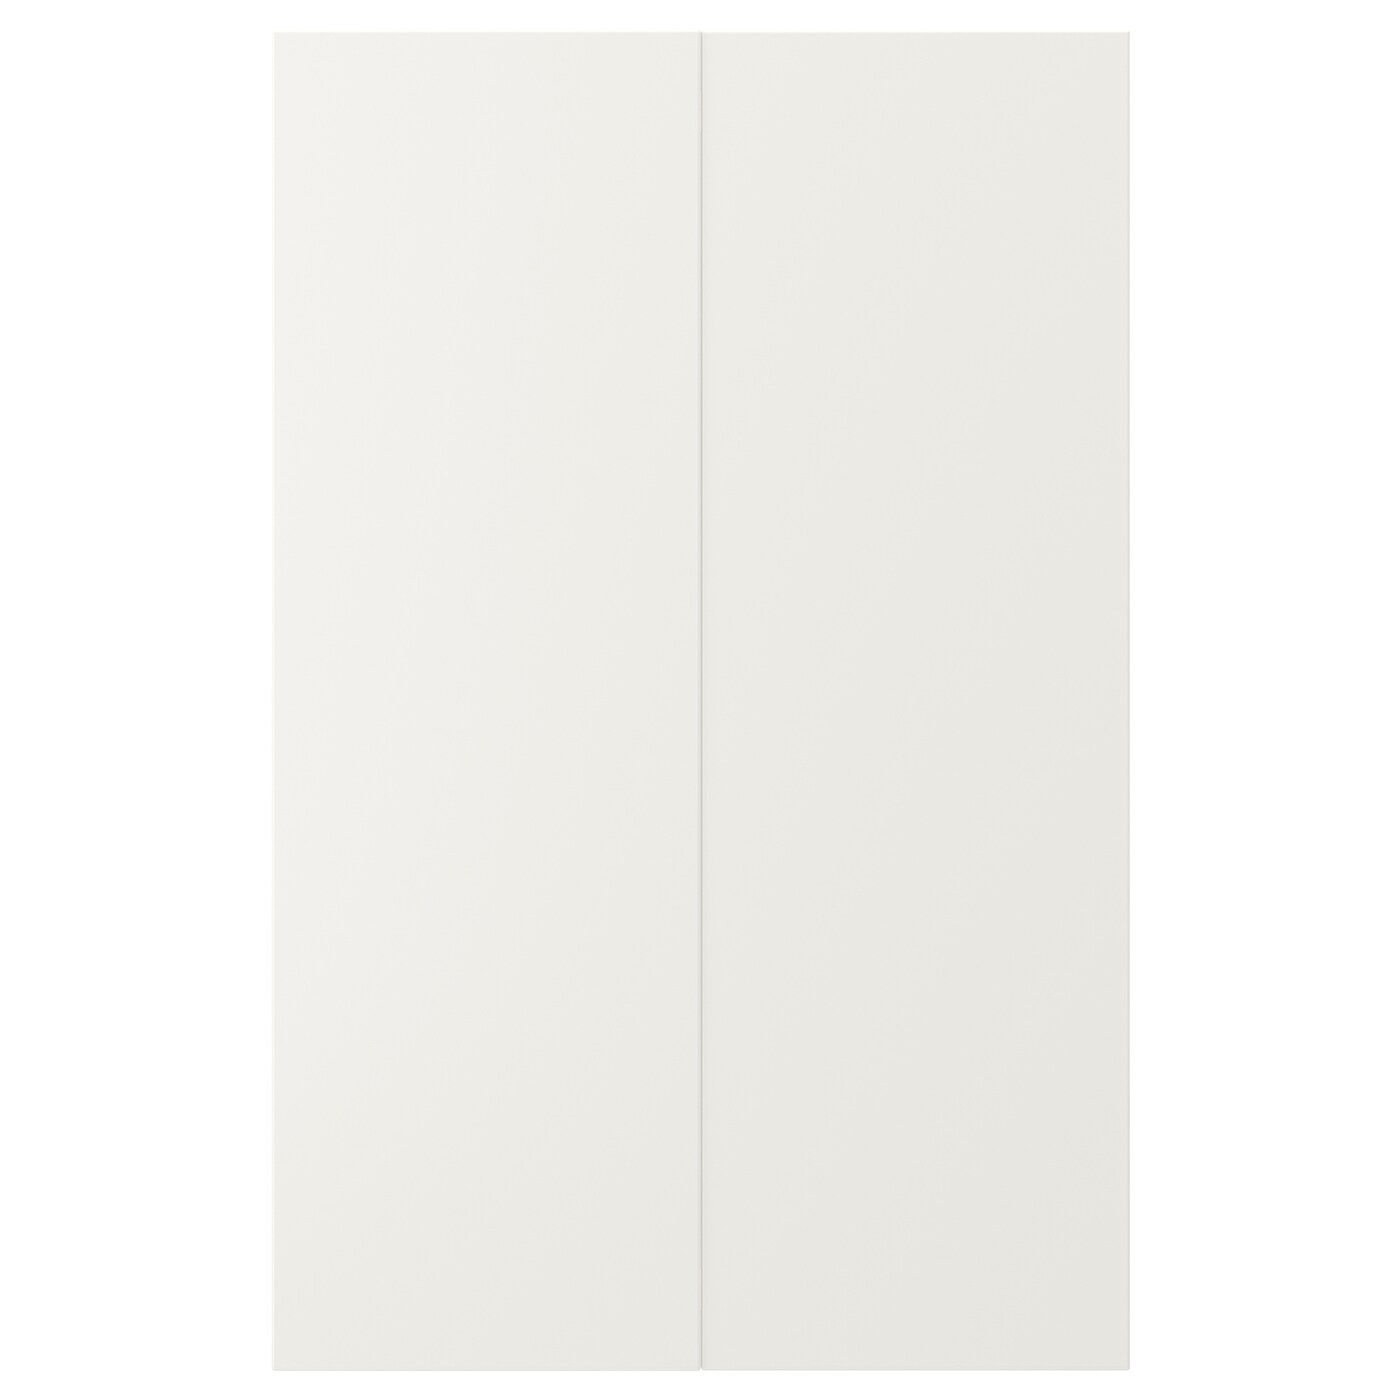 Дверца, 2 шт. - IKEA VEDDINGE, 80х25 см, белый, ВЕДИНГЕ ИКЕА